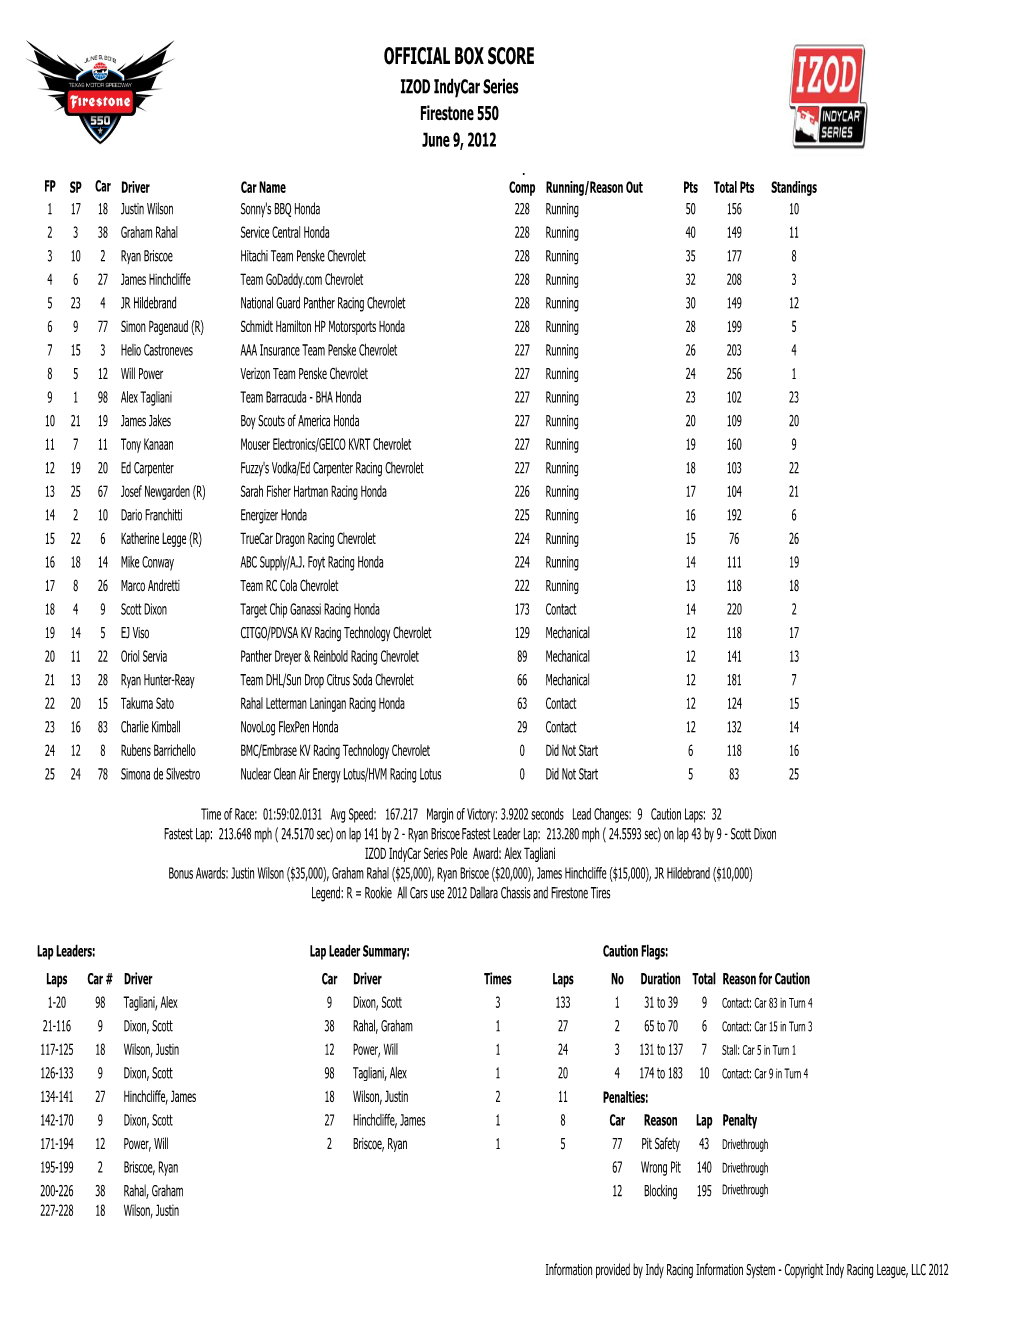 Firestone 550 Race Results